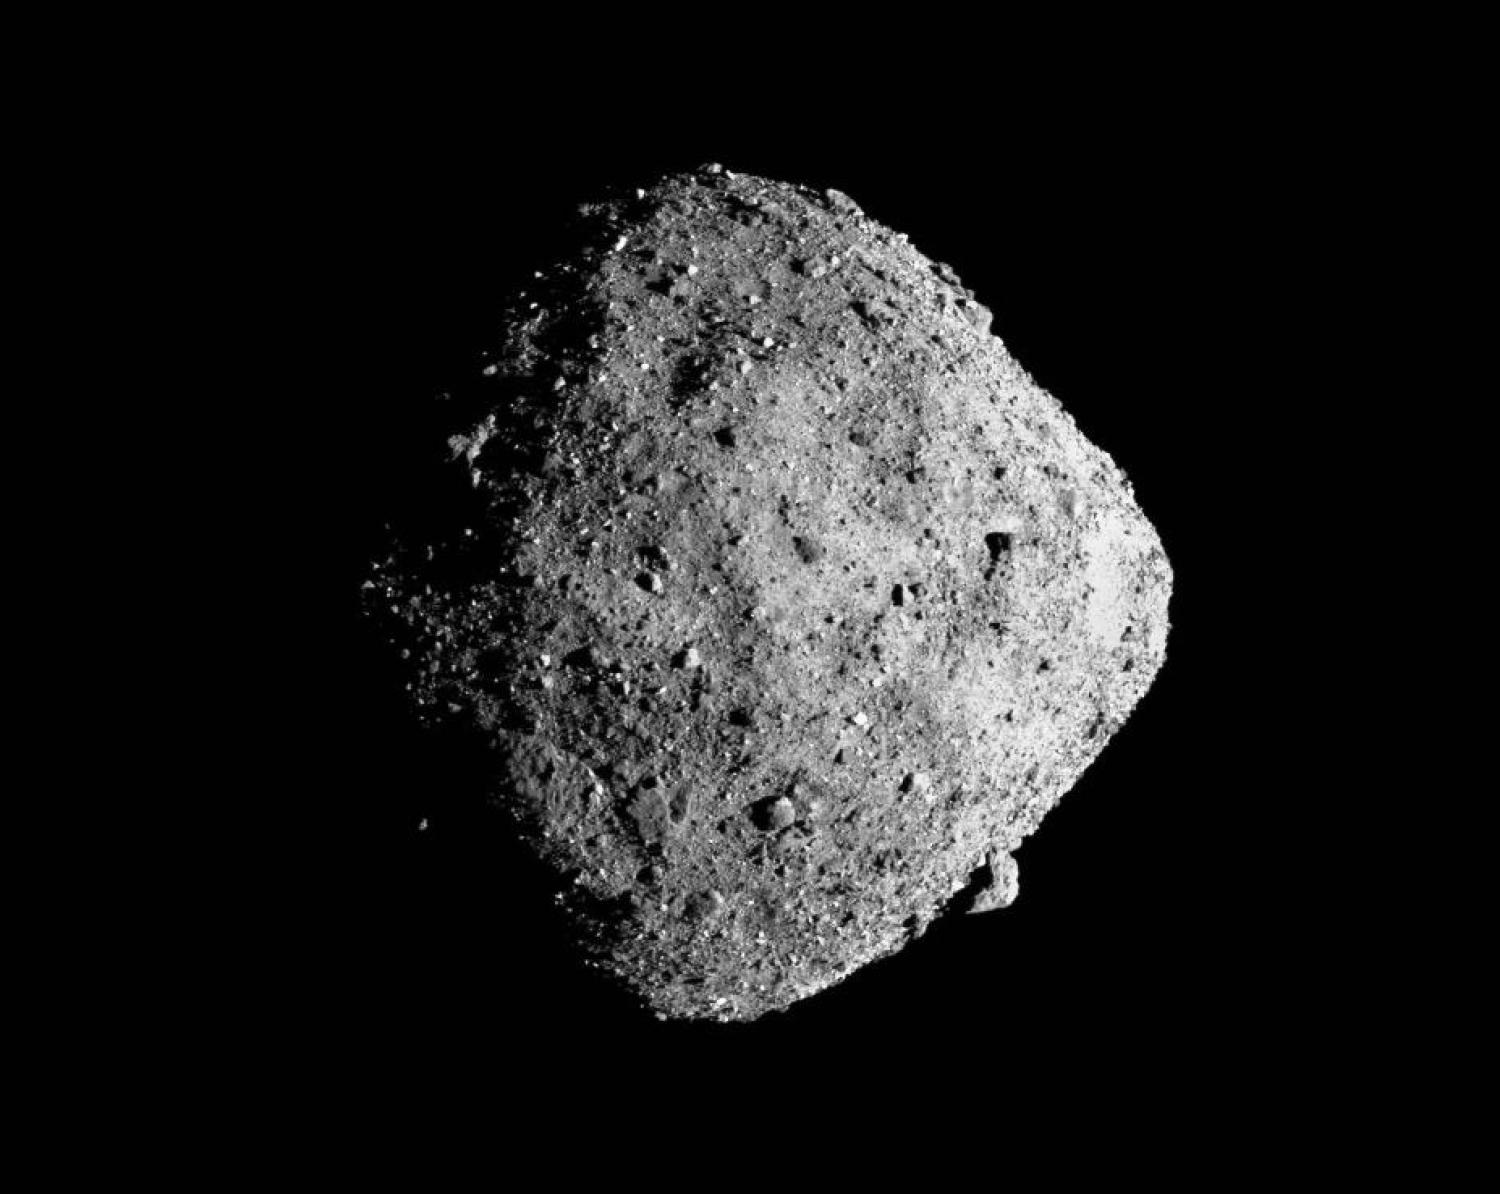 scientists finetune asteroid bennu